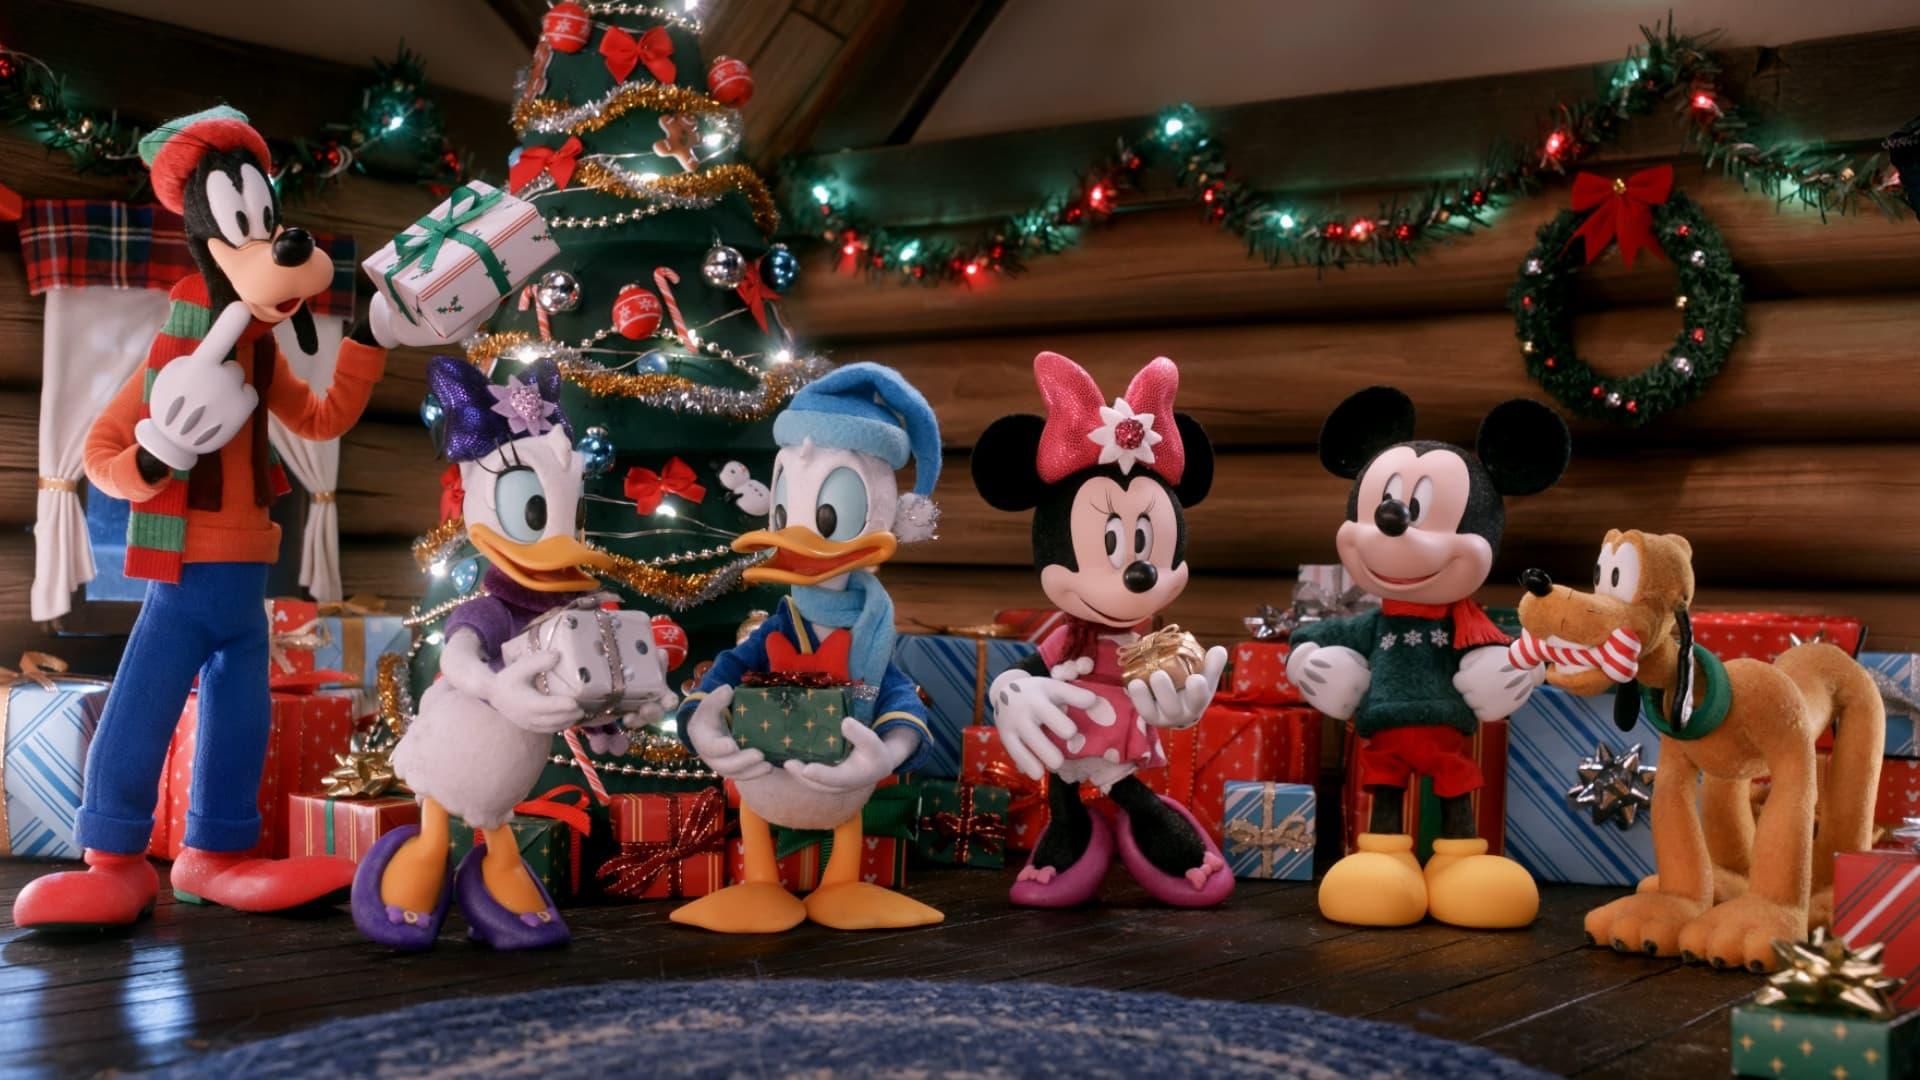 Mickey's Christmas Tales backdrop